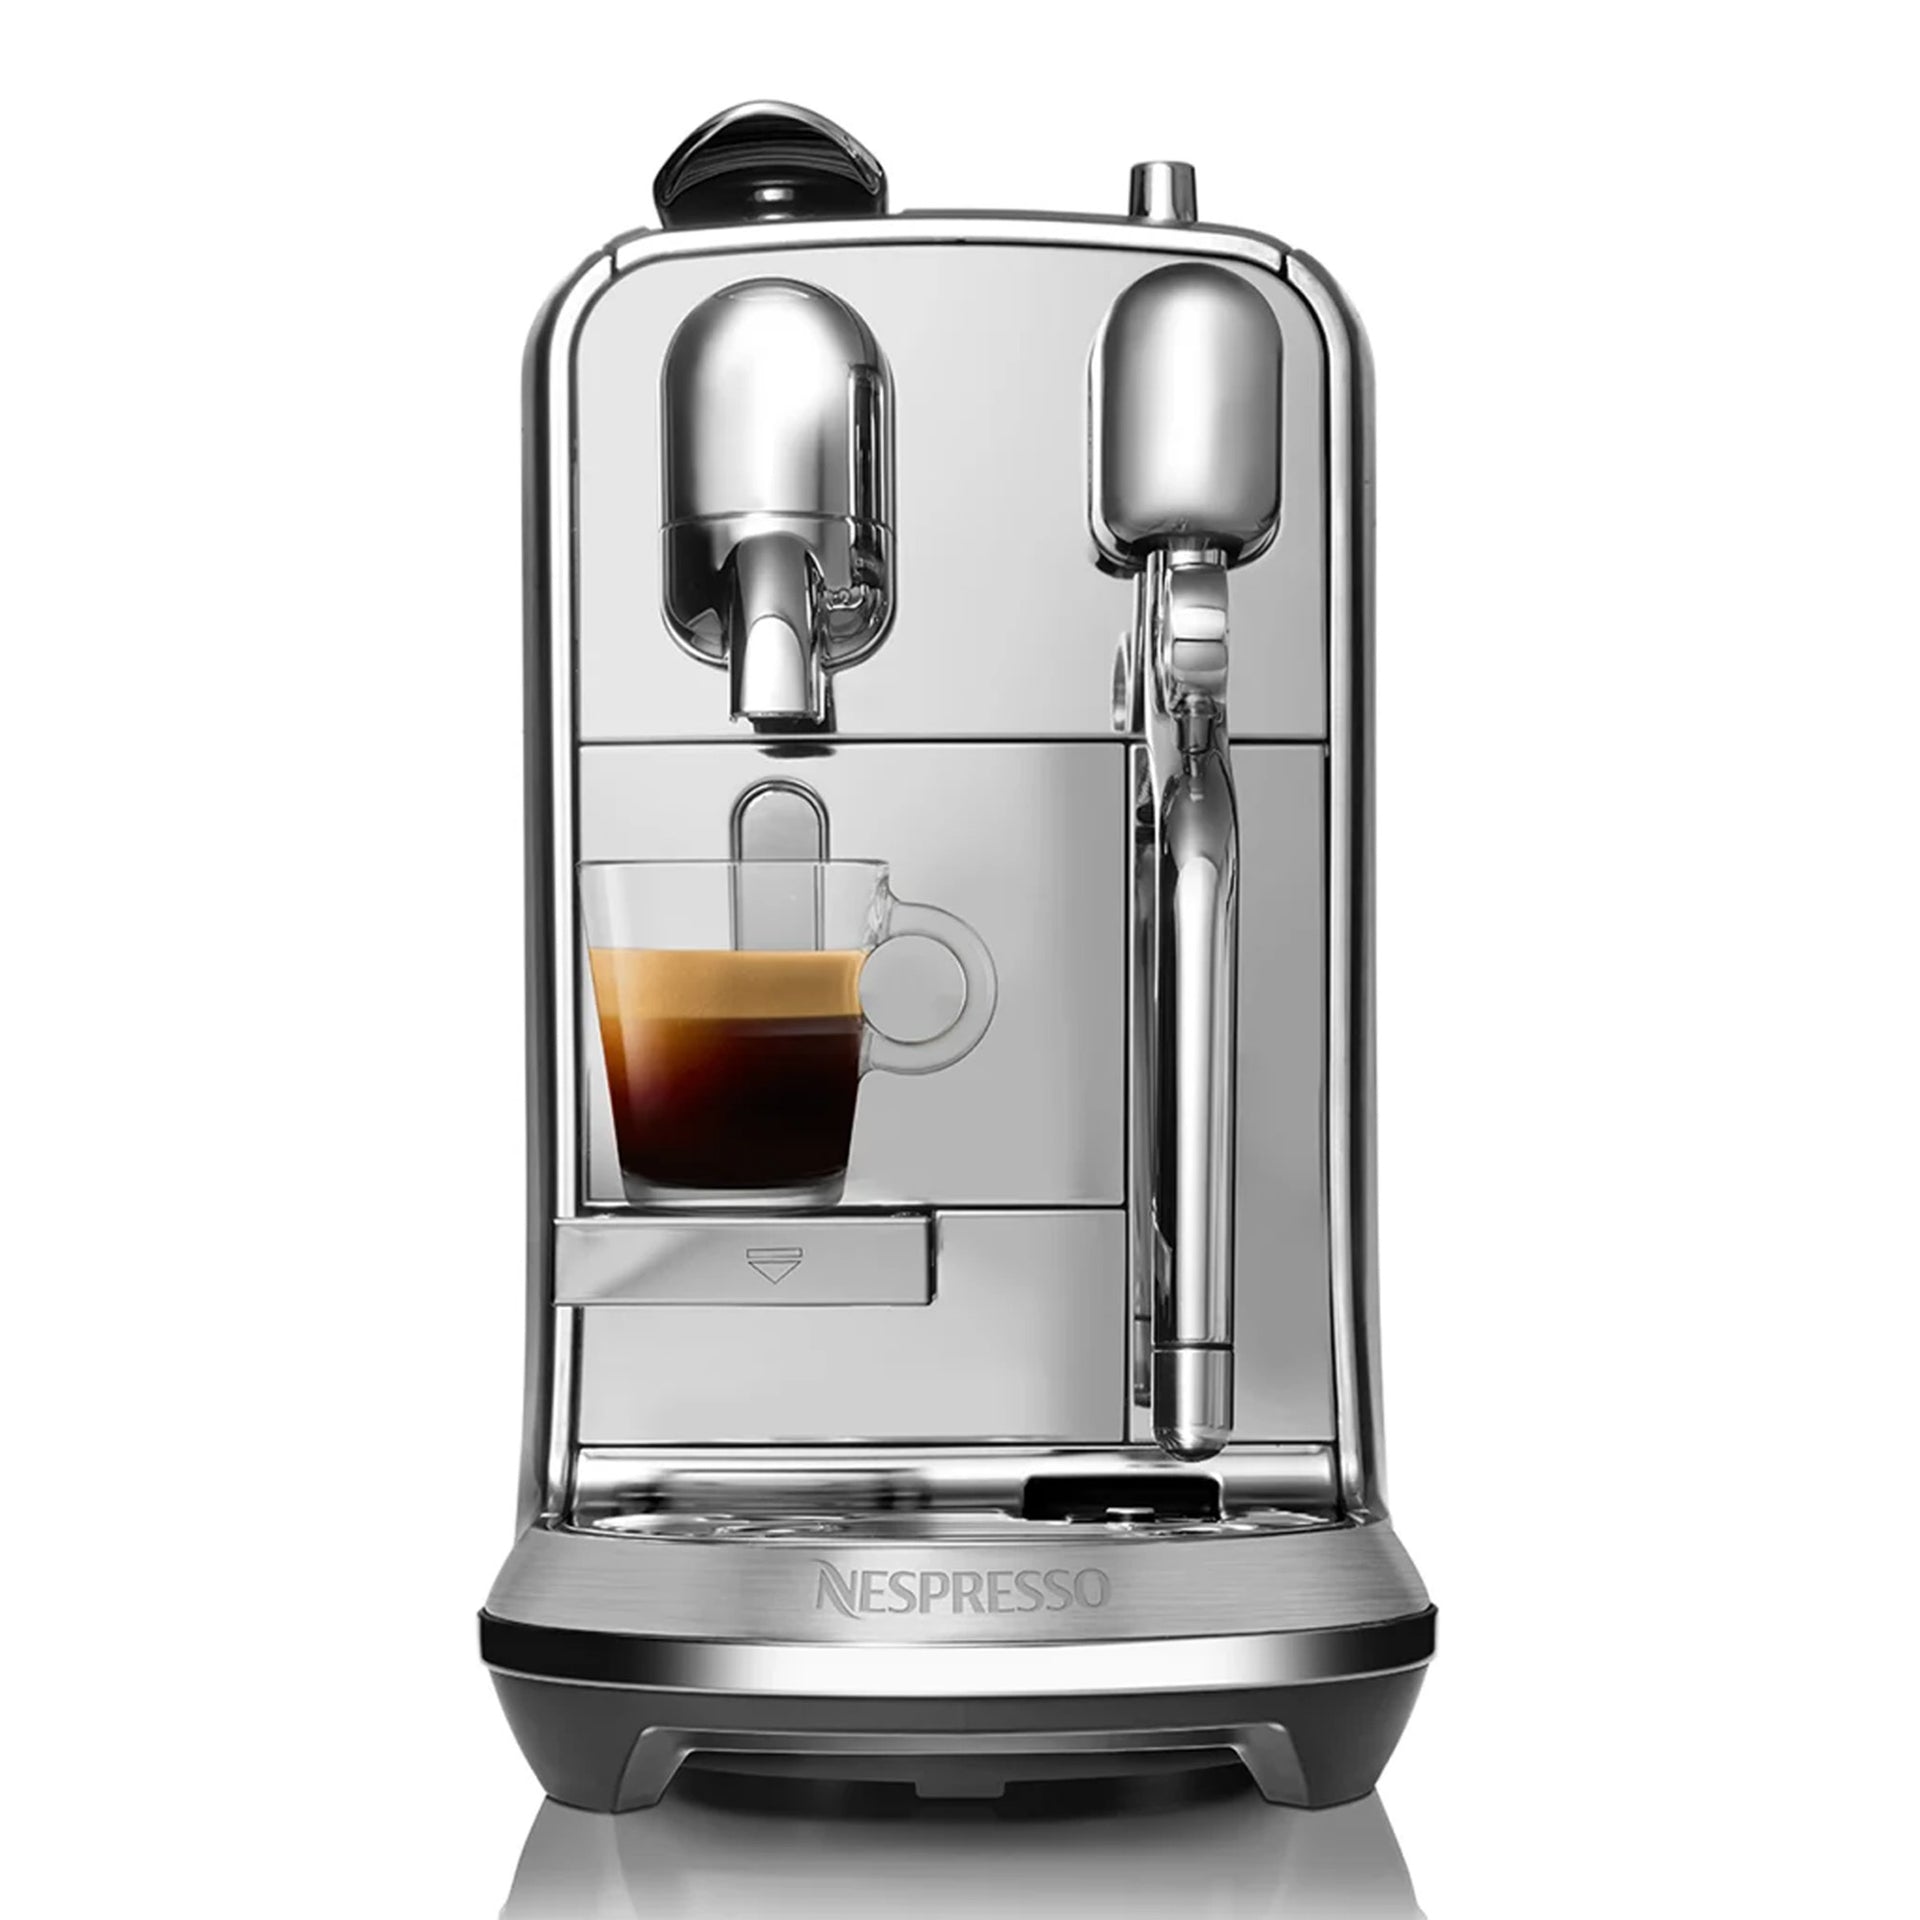 Nespresso Creatista Plus Automatic Espresso Machine with Automatic Steam Wand Silver